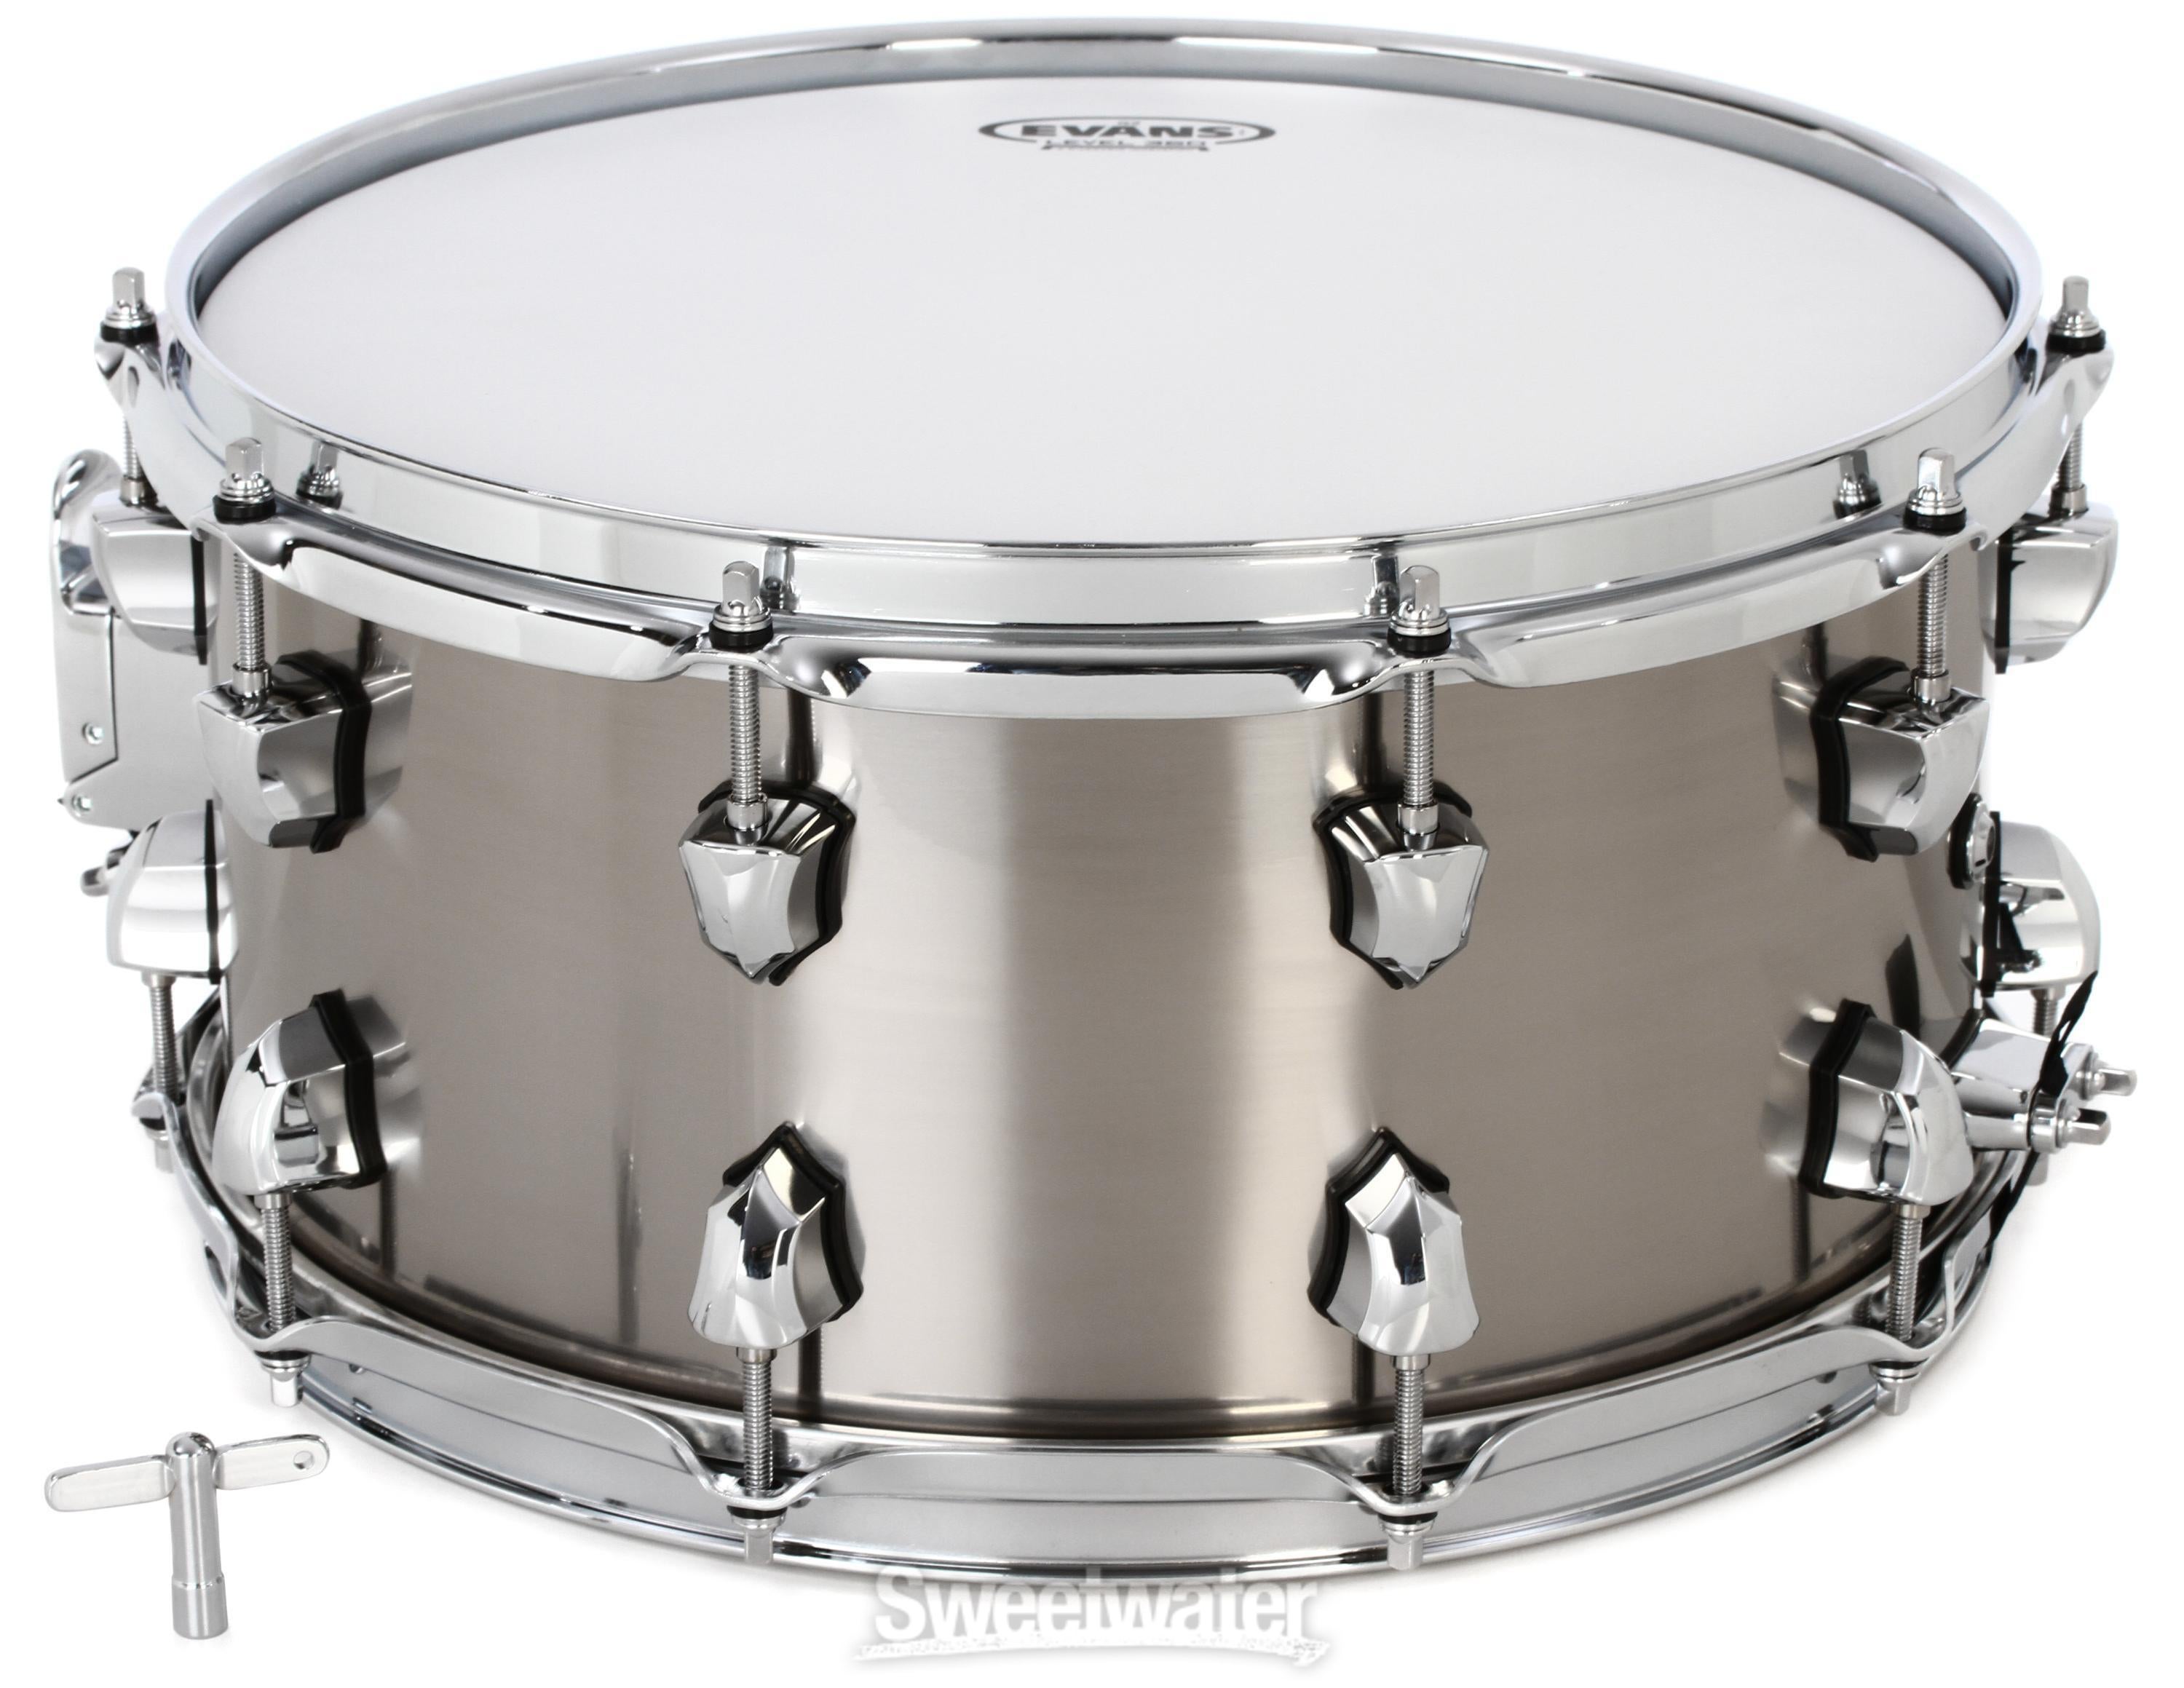 SJC Custom Drums Armada Series Titanium Snare Drum - 7